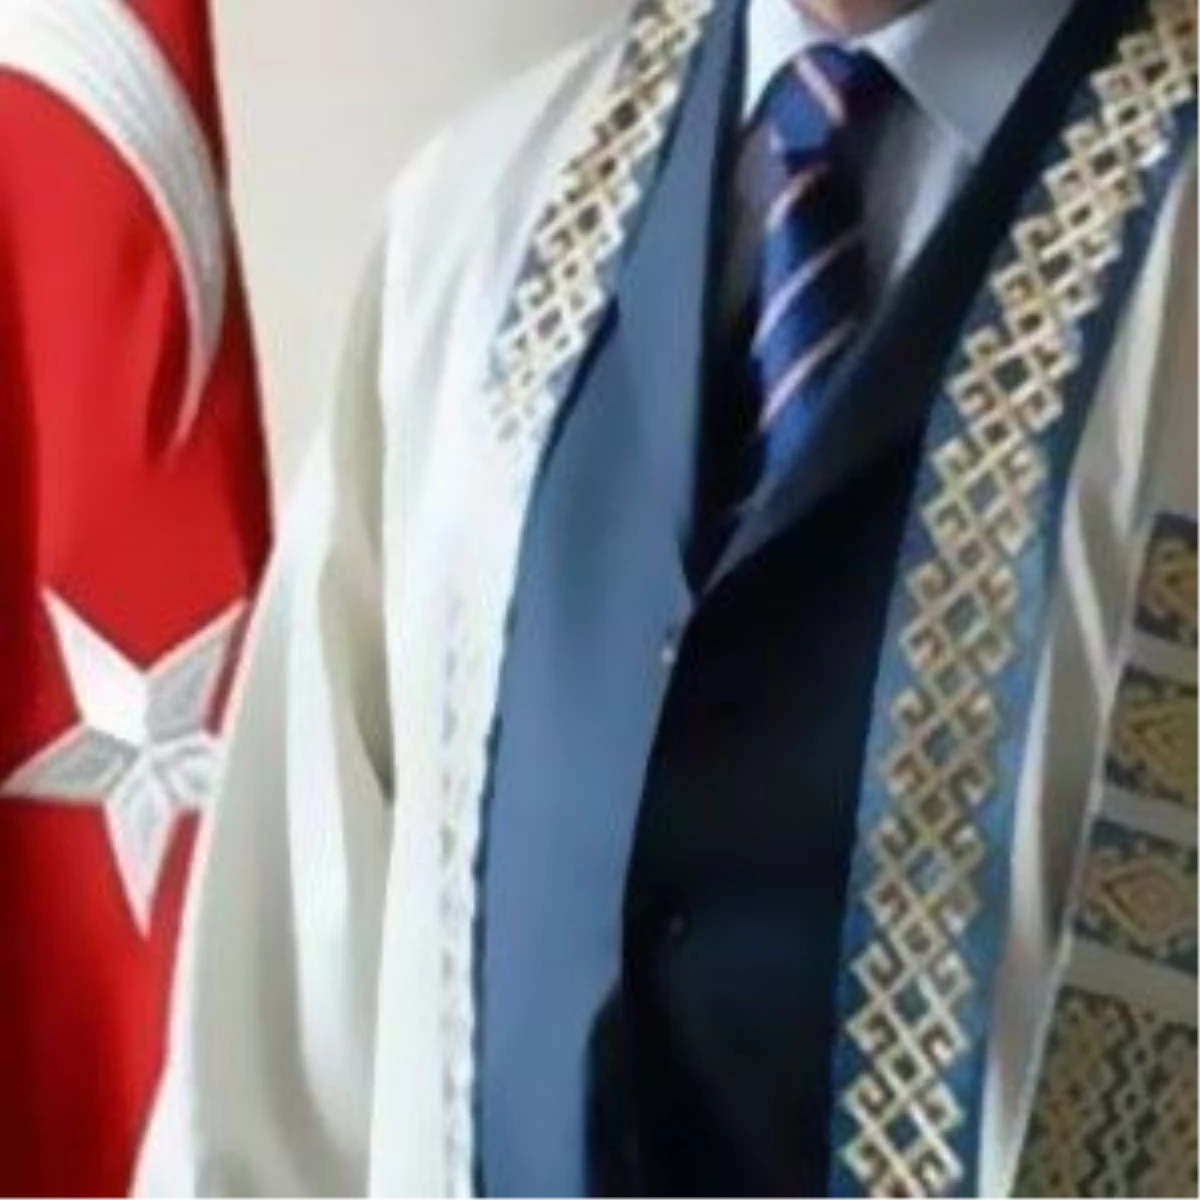 Cumhurbaşkanı Gül, 23 Üniversitenin Rektörünü Atadı